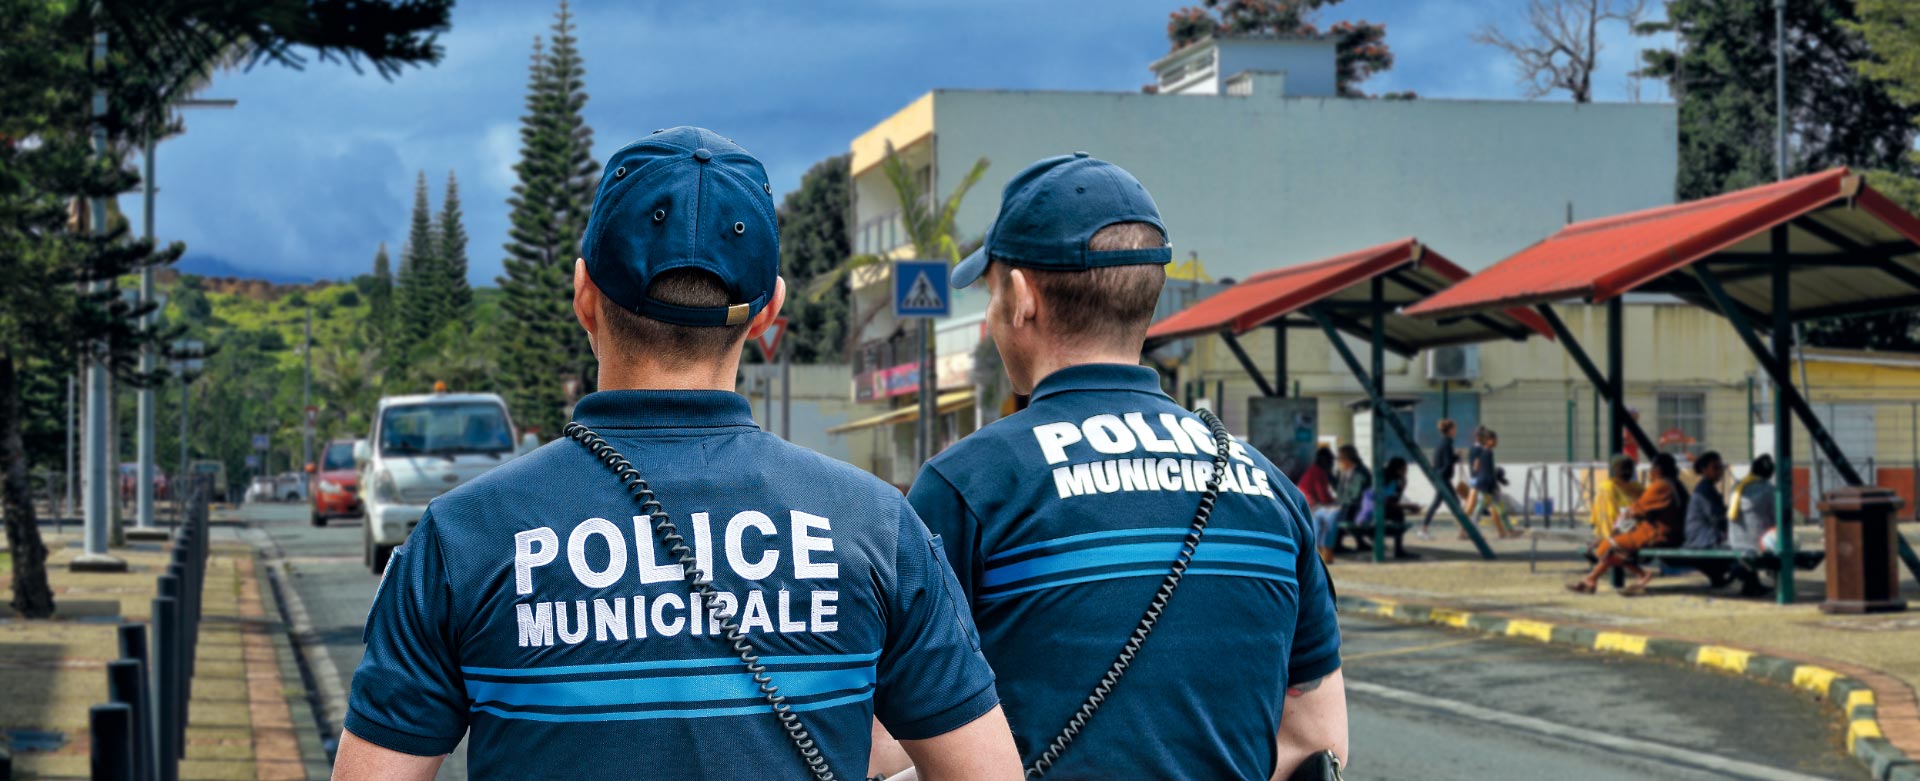 La Police Municipale Site Officiel De La Ville De Paita